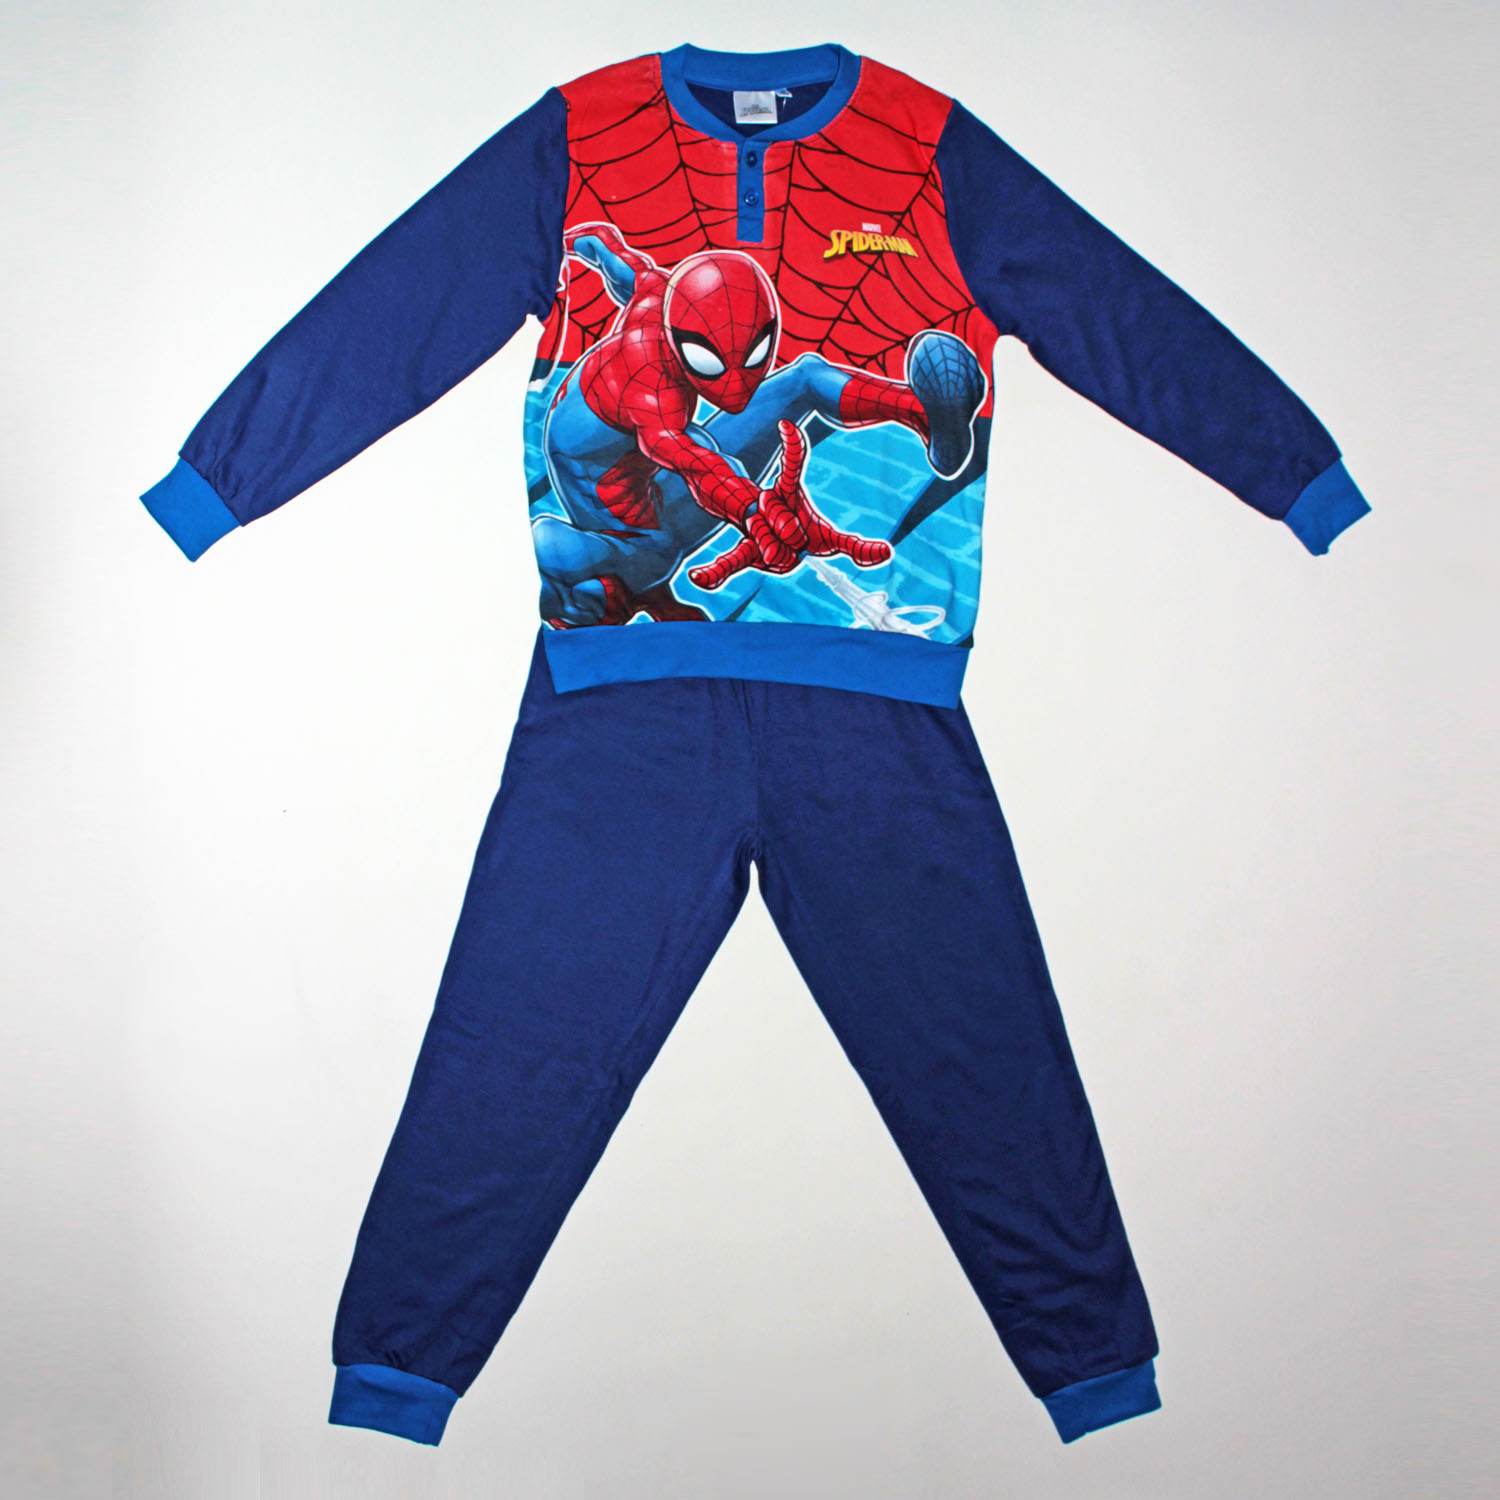 Pijama aterciopelado Spiderman ©Marvel - Pijamas - ROPA INTERIOR, PIJAMAS  - Niño - Niños 